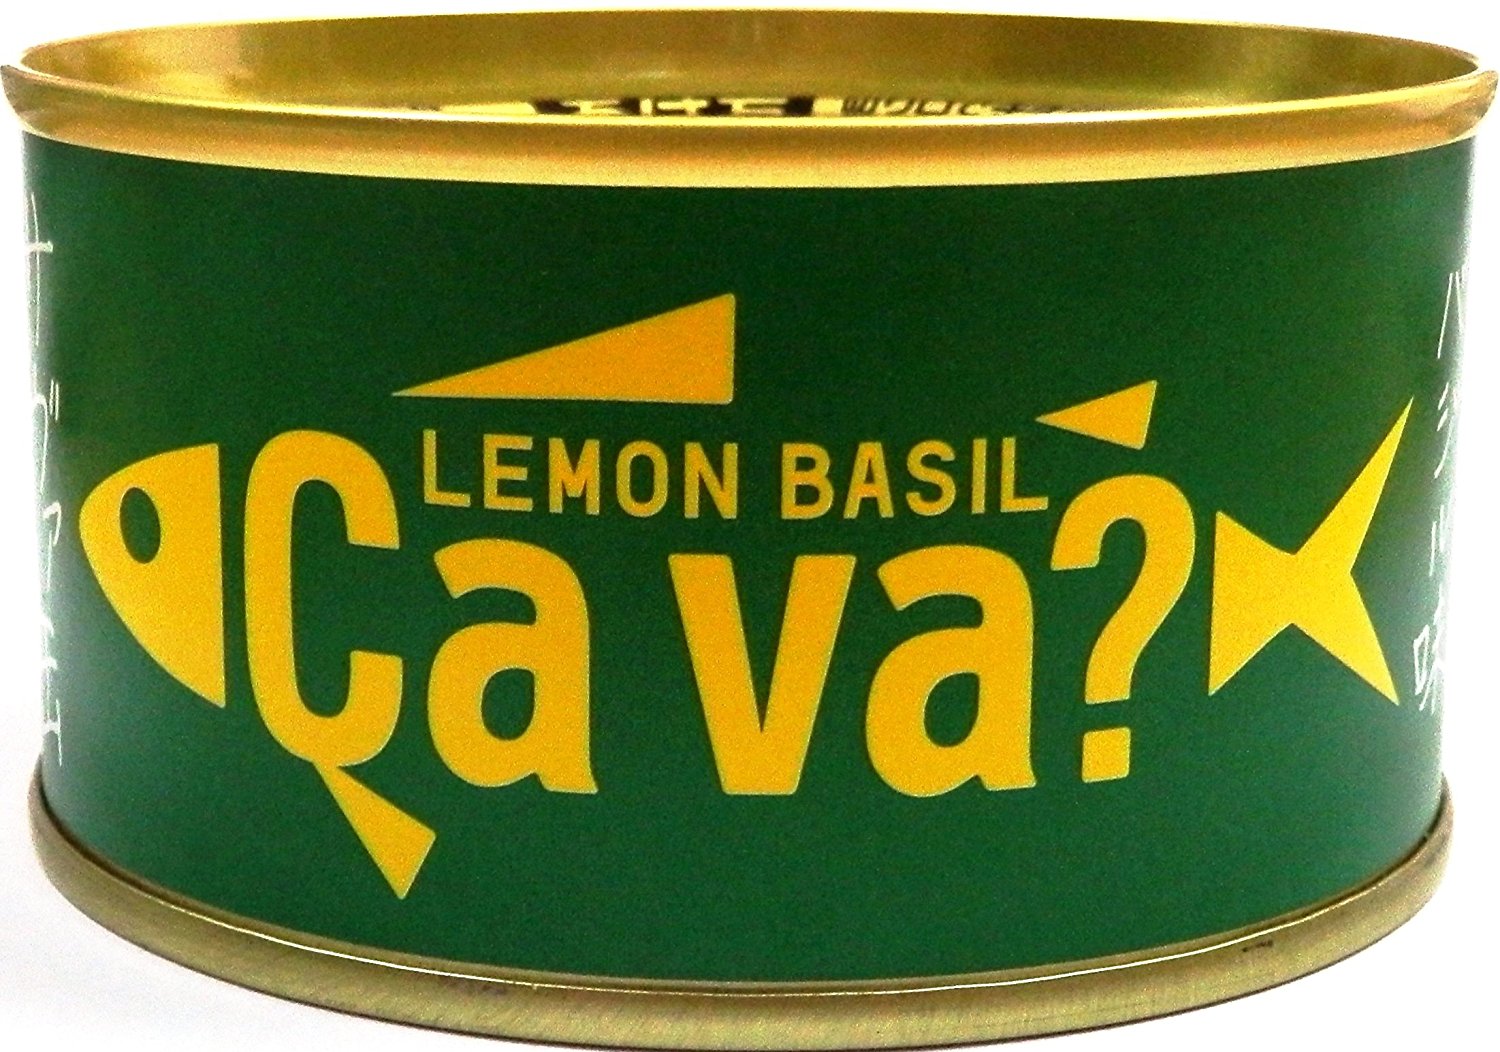 缶詰 サヴァ缶 国産サバのレモンバジル味 岩手県産 170g